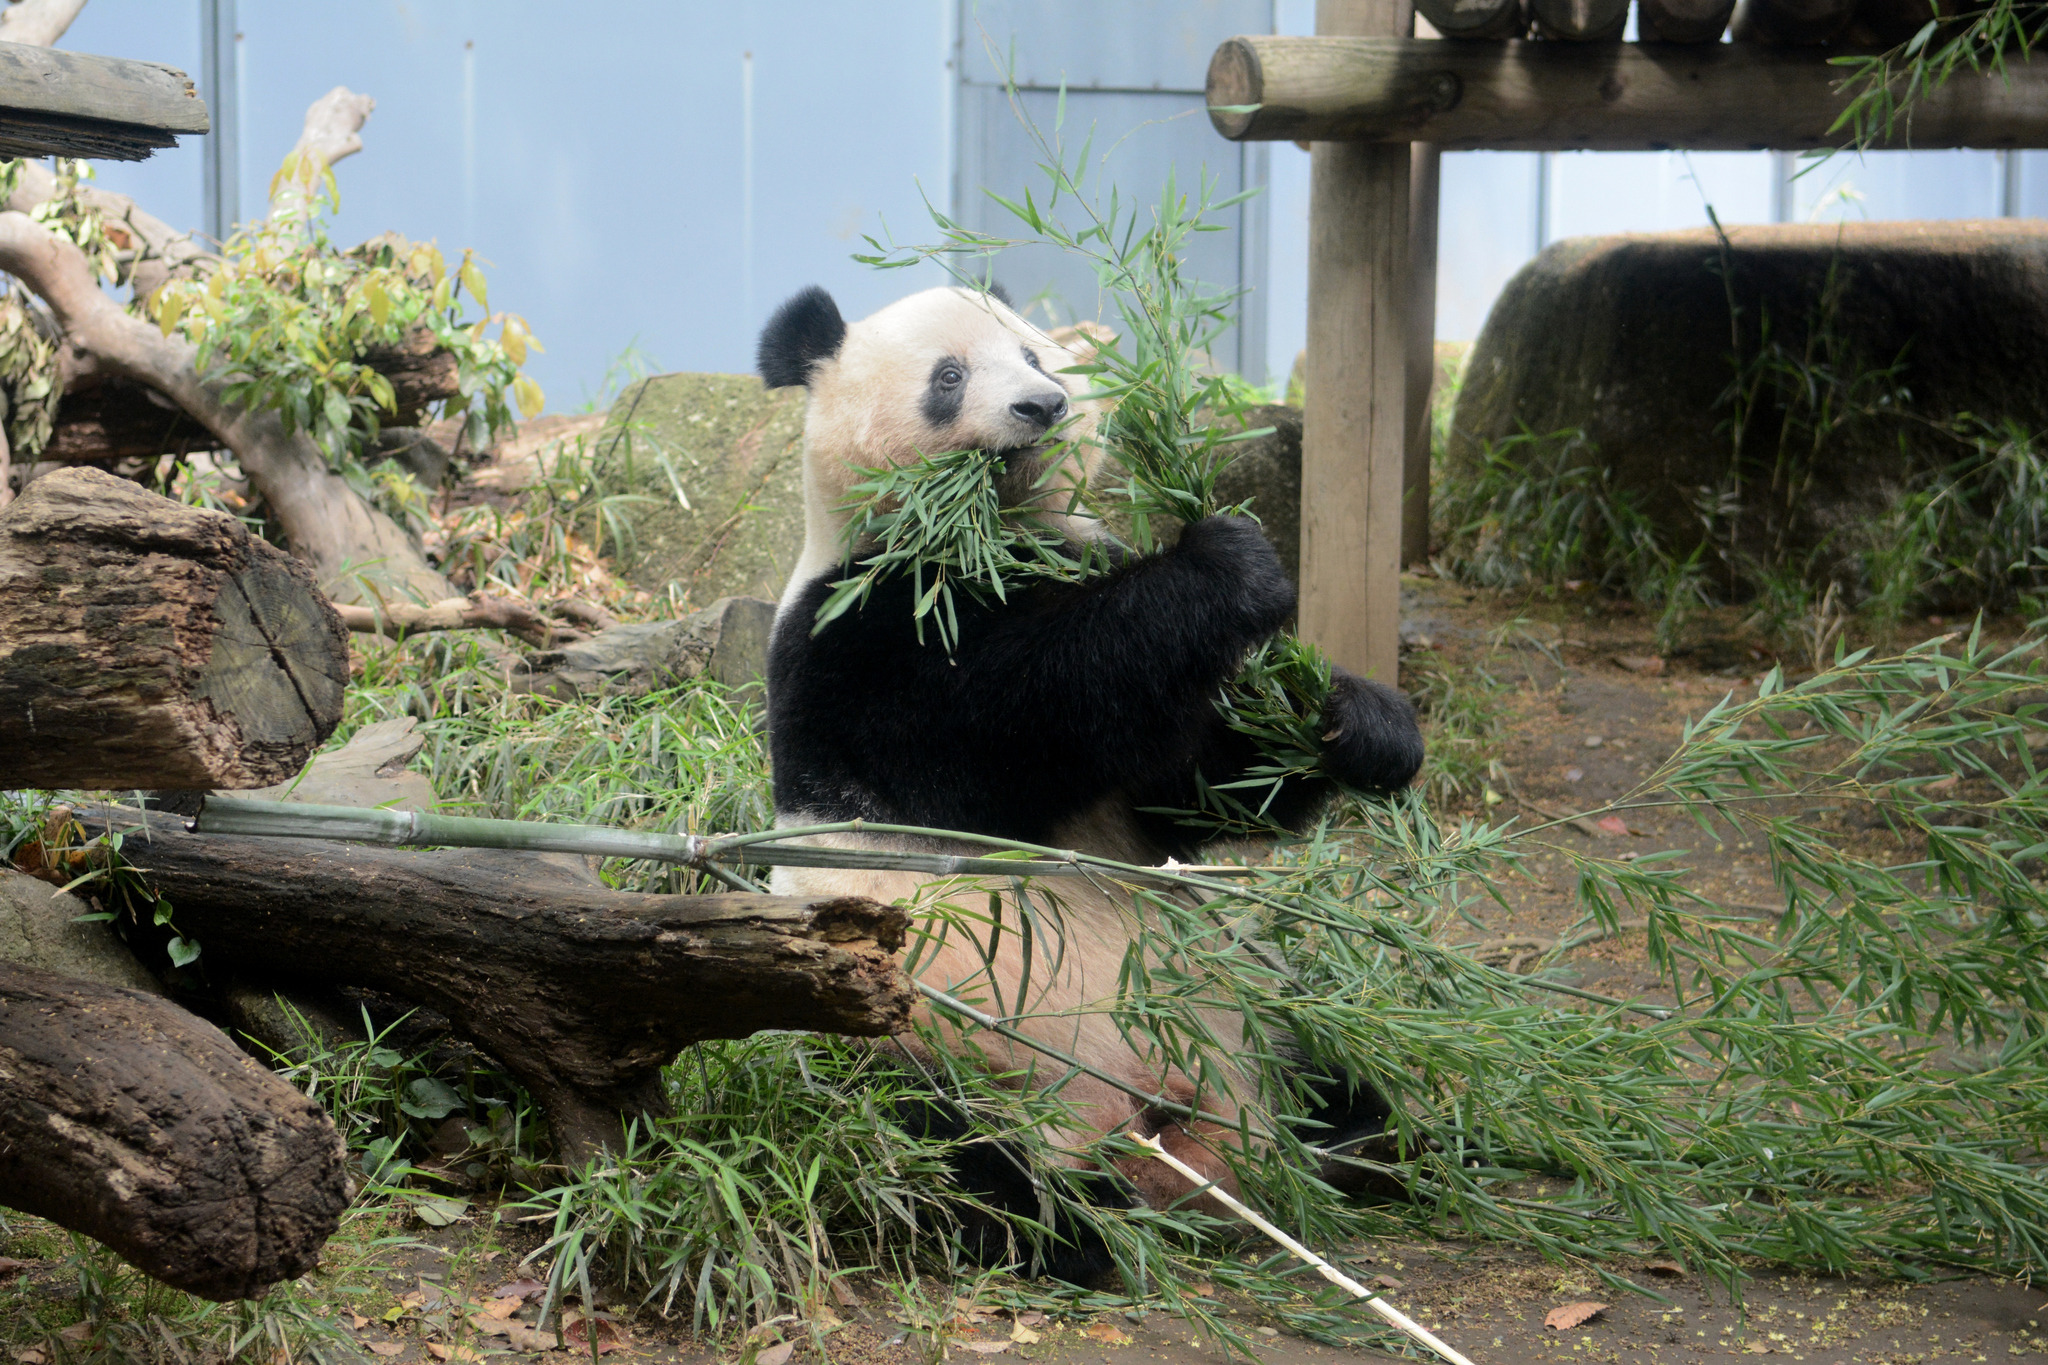 上野動物園のパンダ シャンシャン 6月12日で4歳に Webサイトにて誕生日記念企画 動物のリアルを伝えるwebメディア Reanimal